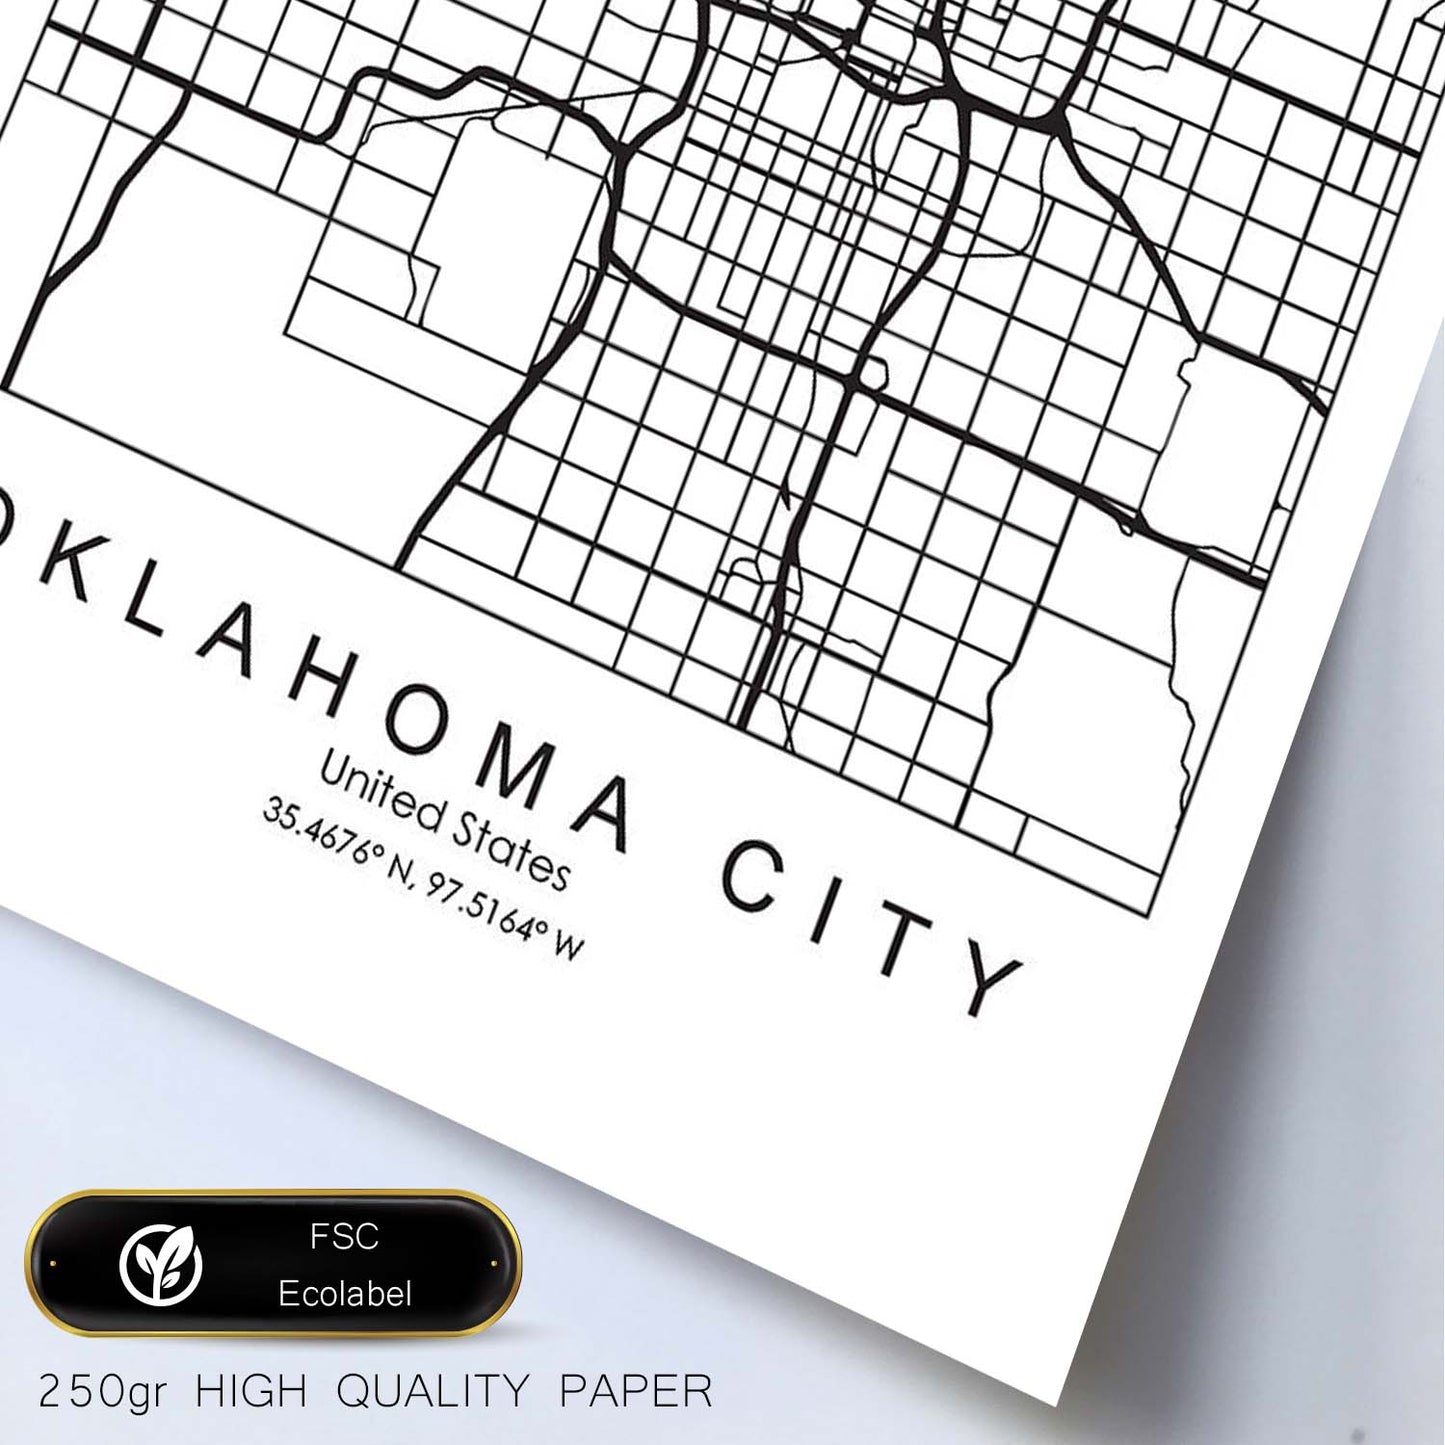 Poster con mapa de Oklahoma. Lámina de Estados Unidos, con imágenes de mapas y carreteras-Artwork-Nacnic-Nacnic Estudio SL